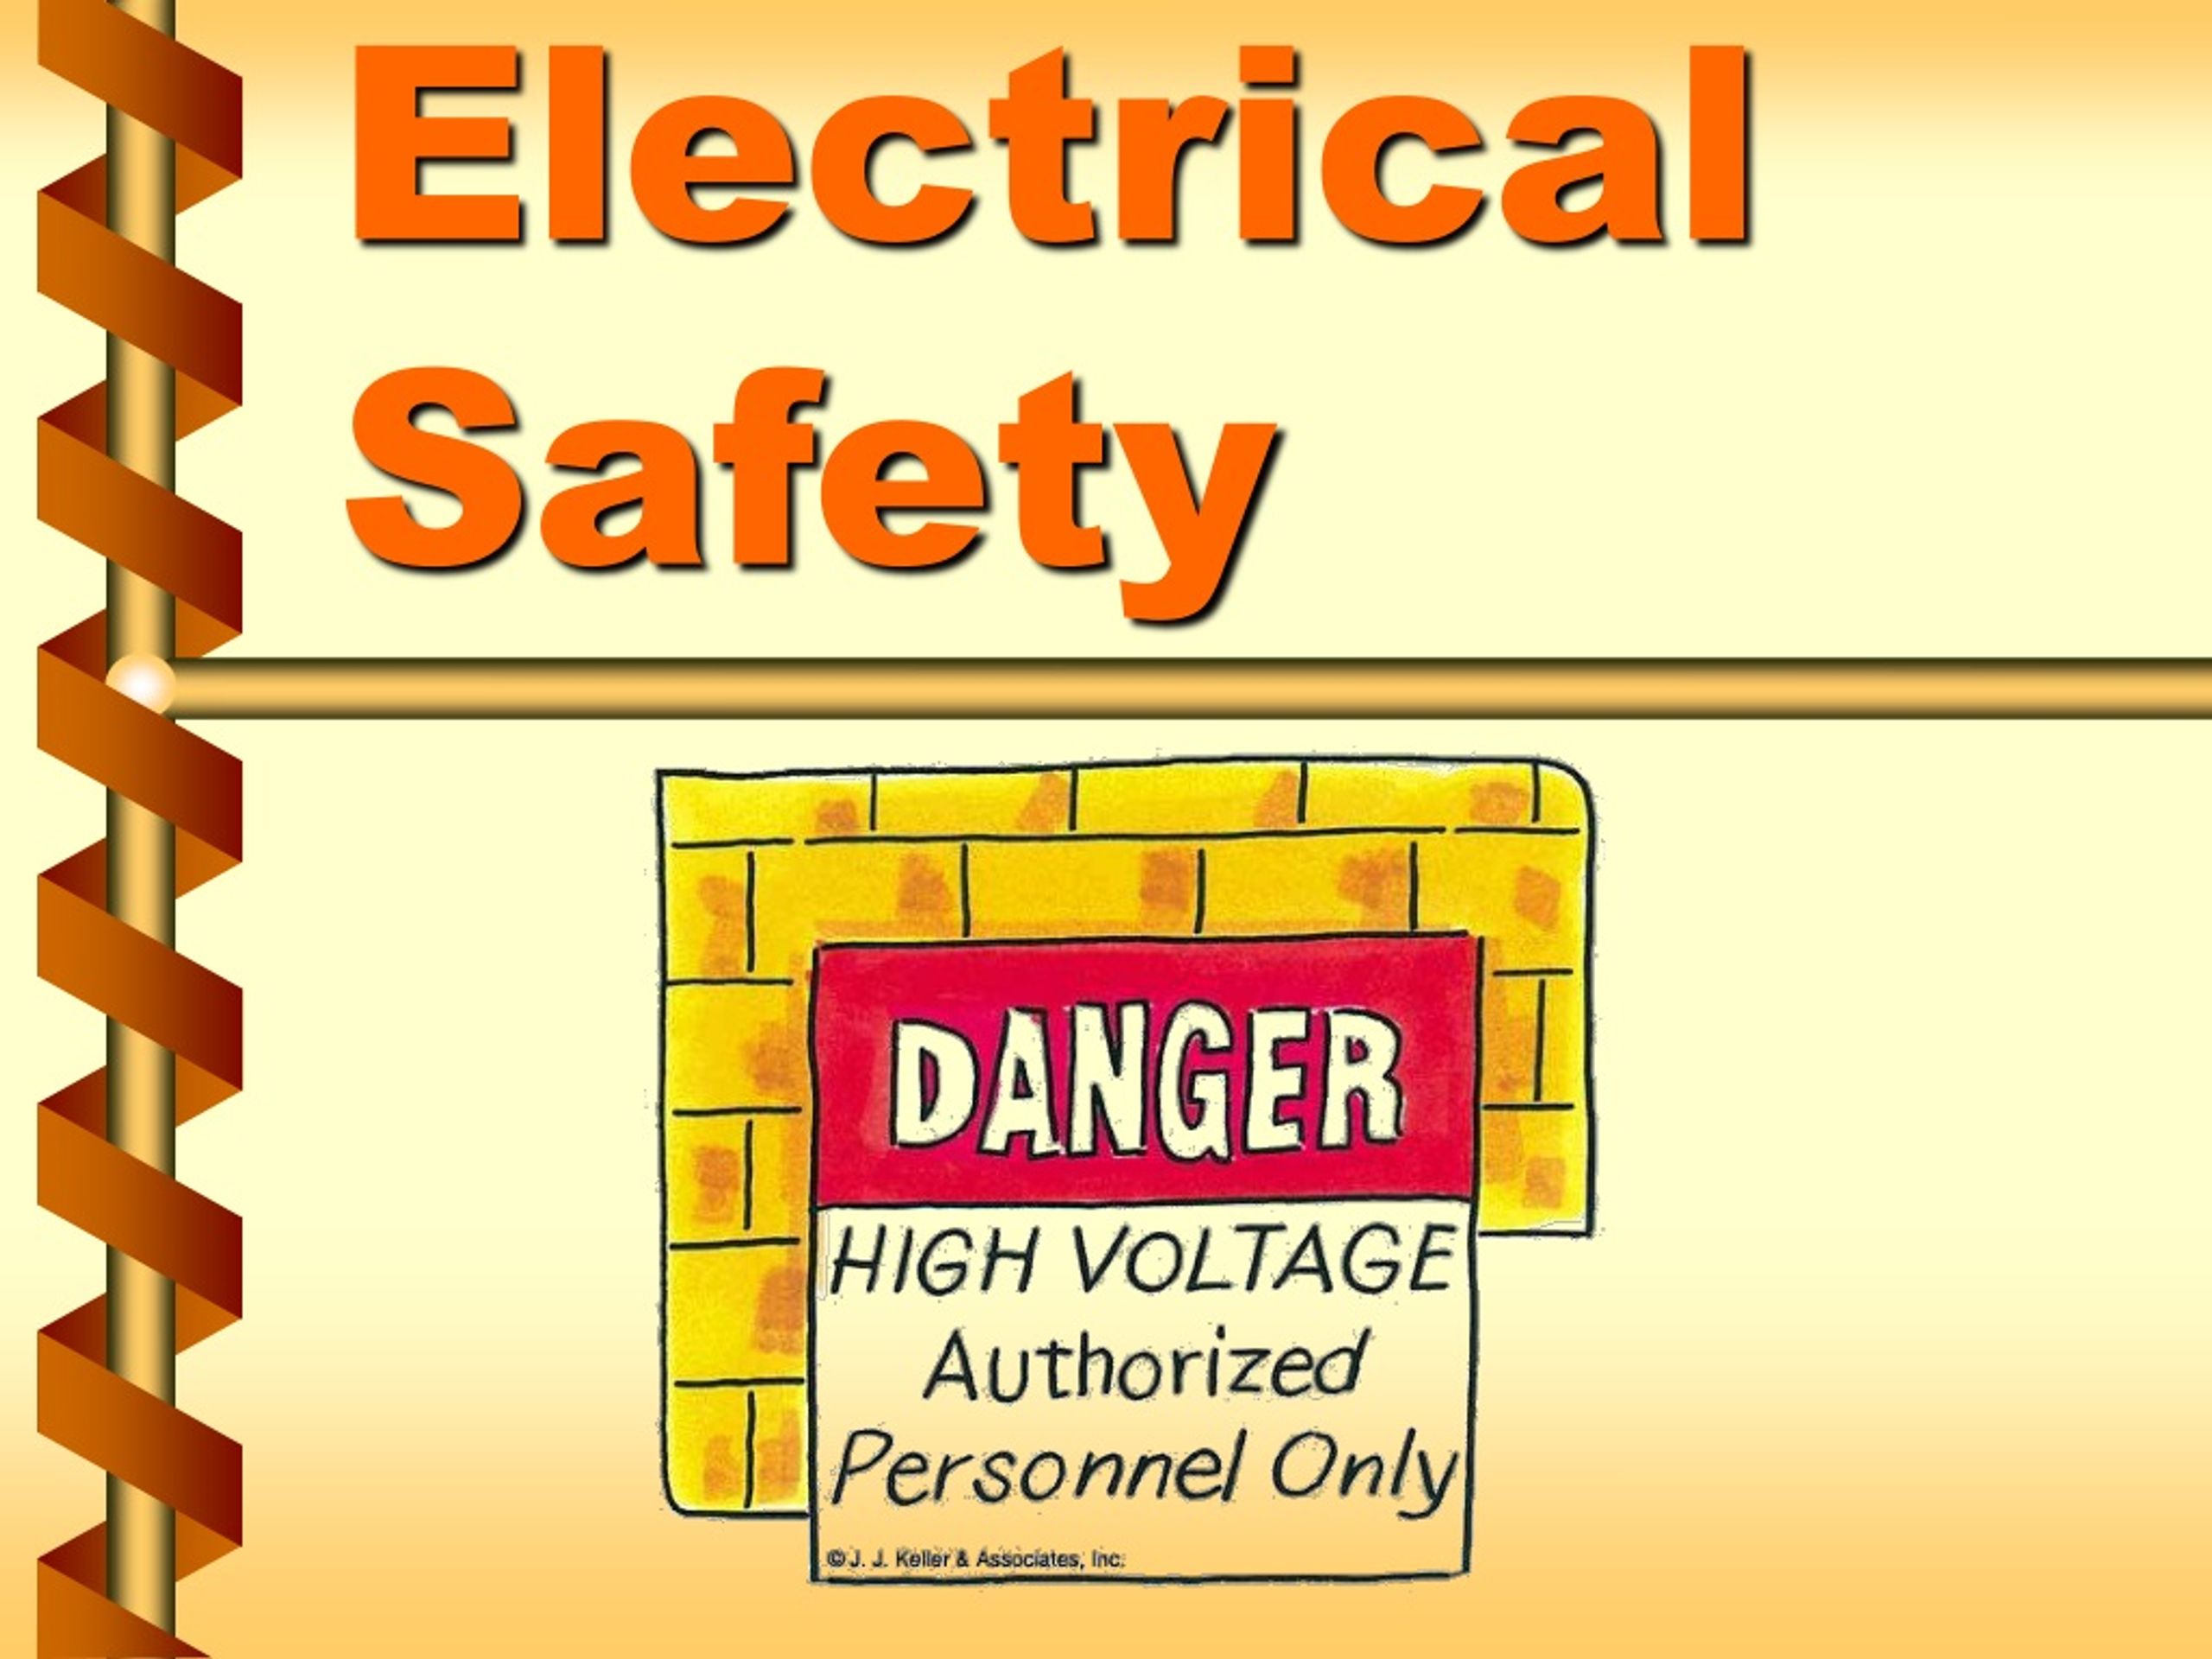 electrical safety presentation slides